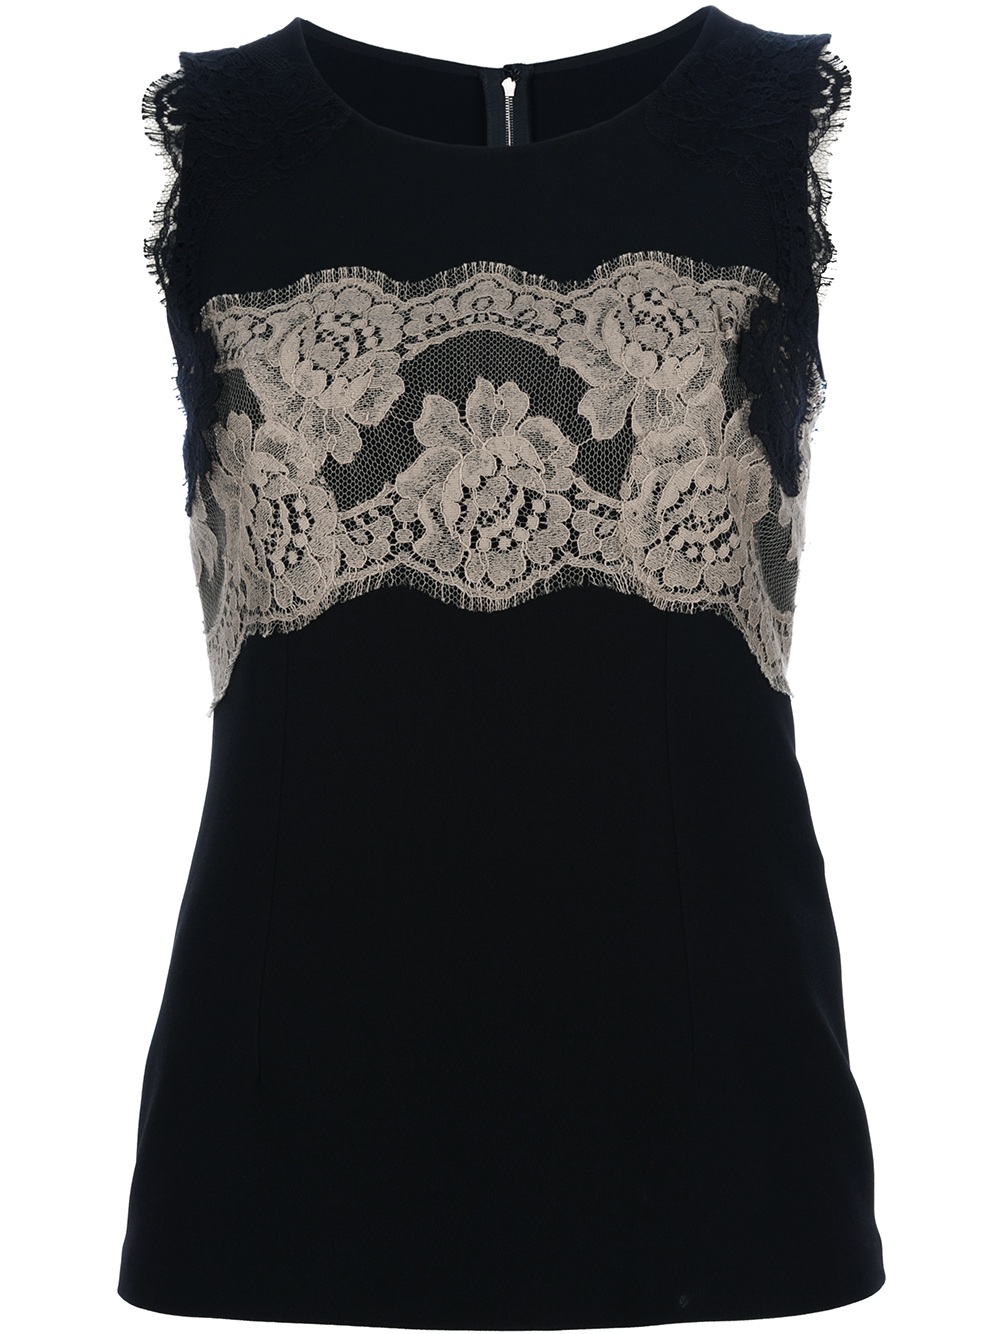 Dolce & gabbana Lace Embellished Vest Top in Black | Lyst